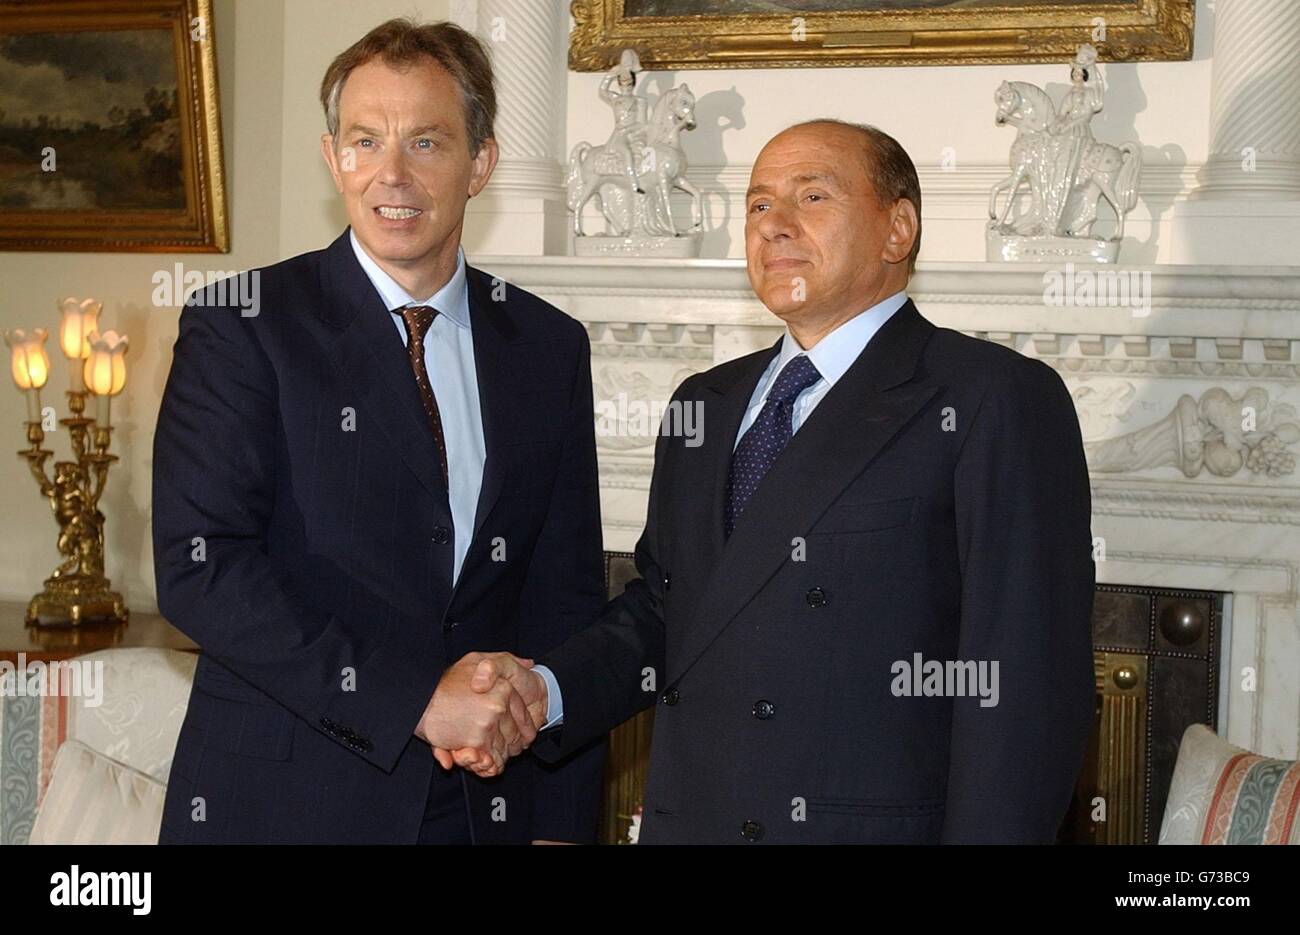 Il primo Ministro Tony Blair, a sinistra, scuote la mano del suo omologo italiano Silvio Berlusconi nella Sala Bianca all'interno della sua residenza londinese al numero 10 di Downing Street, nel centro di Londra, prima di un incontro. Foto Stock